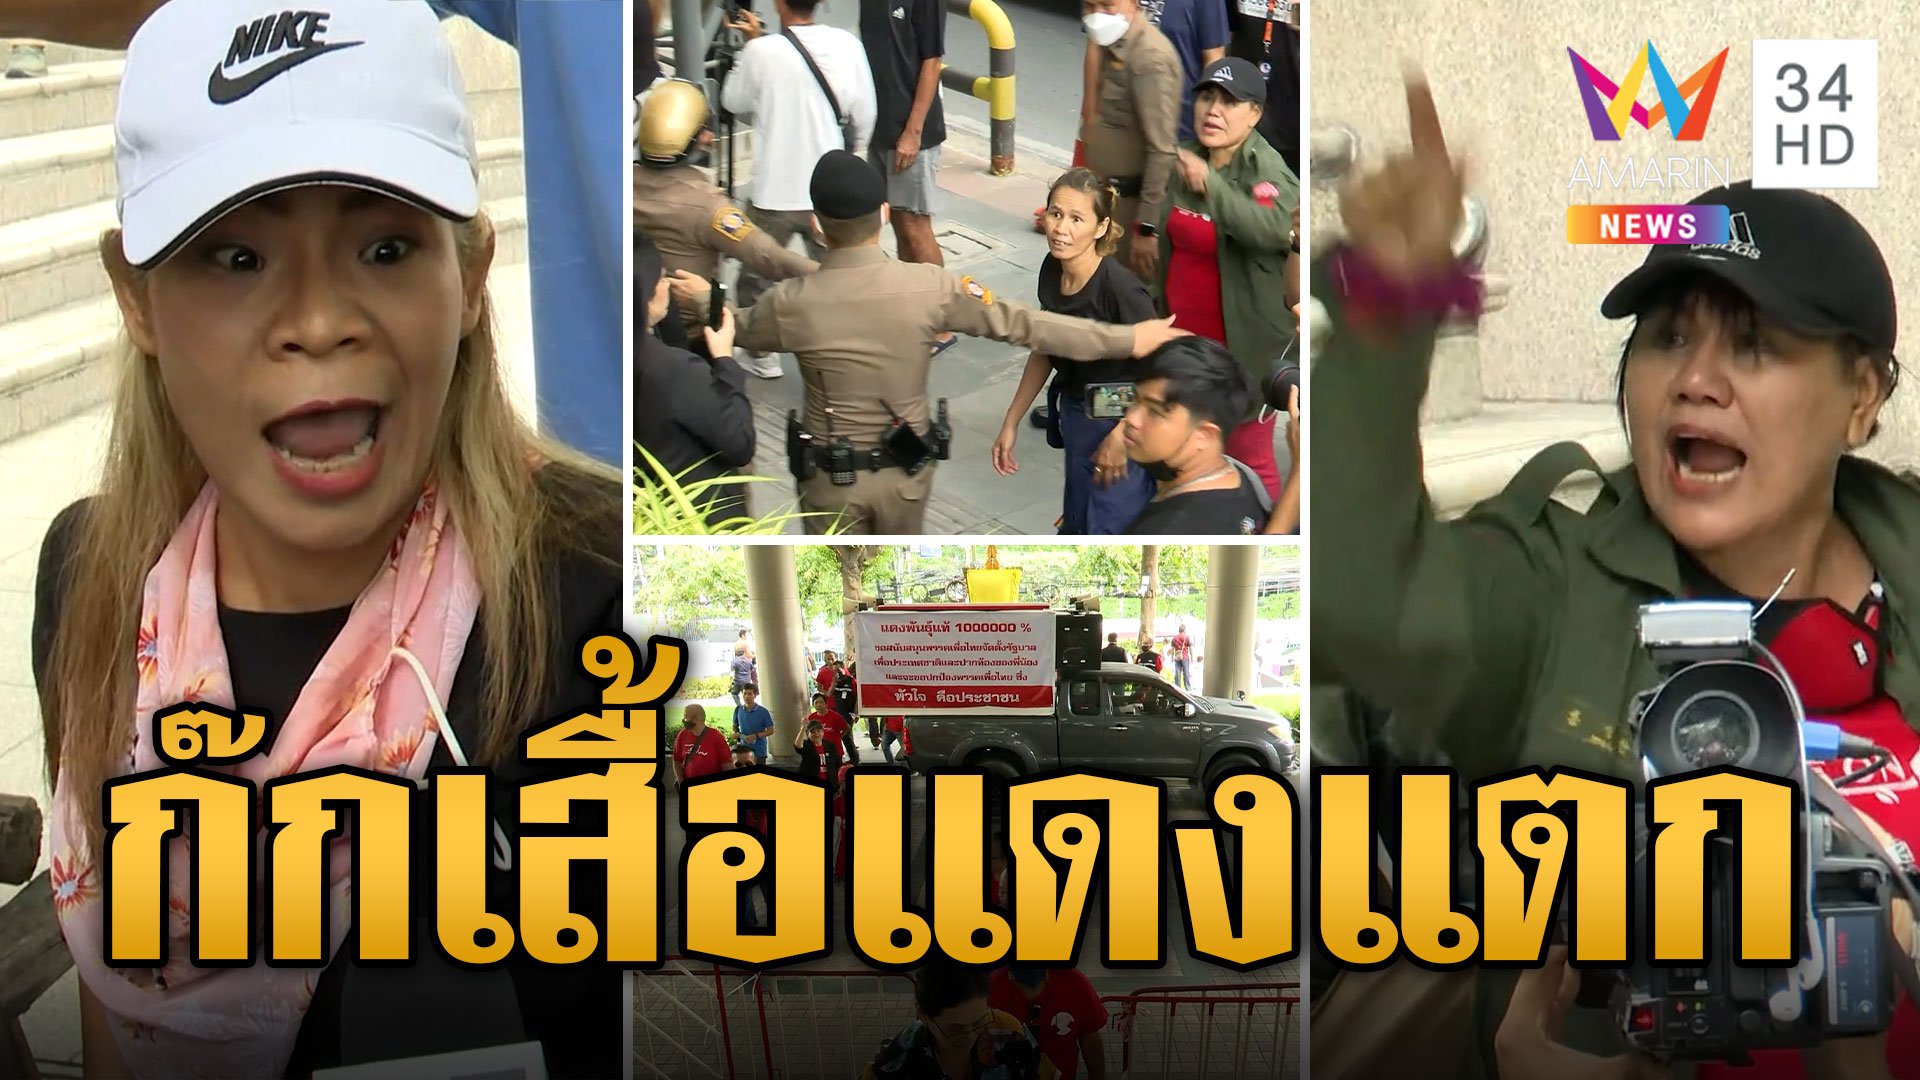 คนเสื้อแดงเชียร์เพื่อไทยตั้งรัฐบาล เสื้อแดงเทิดไทยธนบุรีฉะหักหลัง ปชช.หวิดปะทะกัน | ข่าวอรุณอมรินทร์ | 16 ส.ค. 66 | AMARIN TVHD34